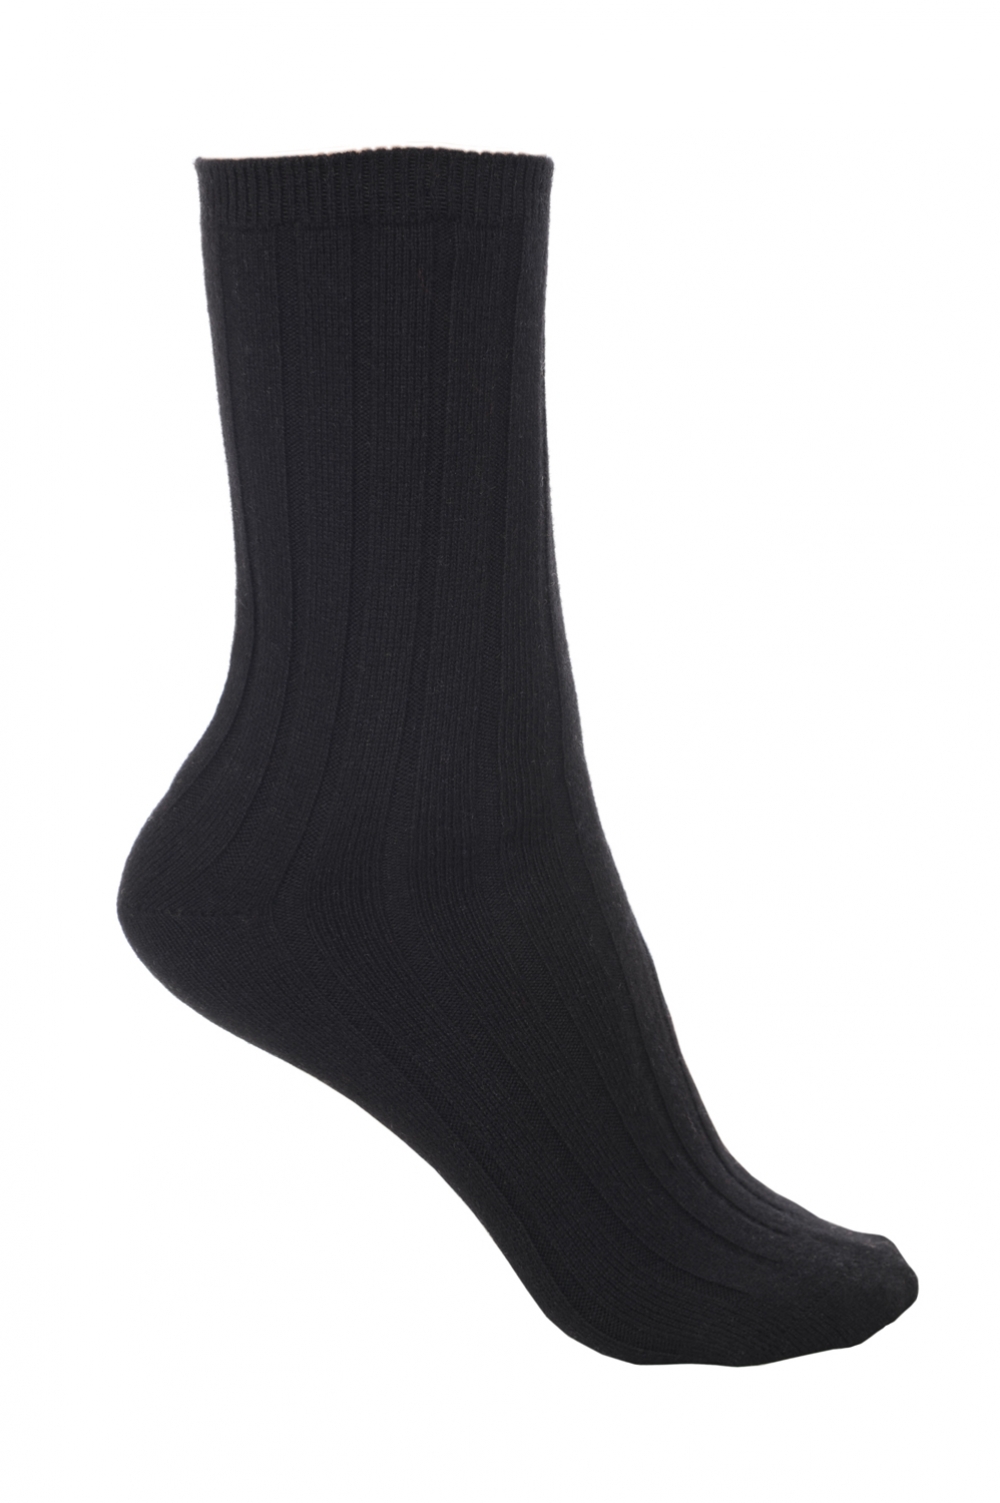 Cashmere & Elastane accessories socks dragibus m black 5 5 8 39 42 